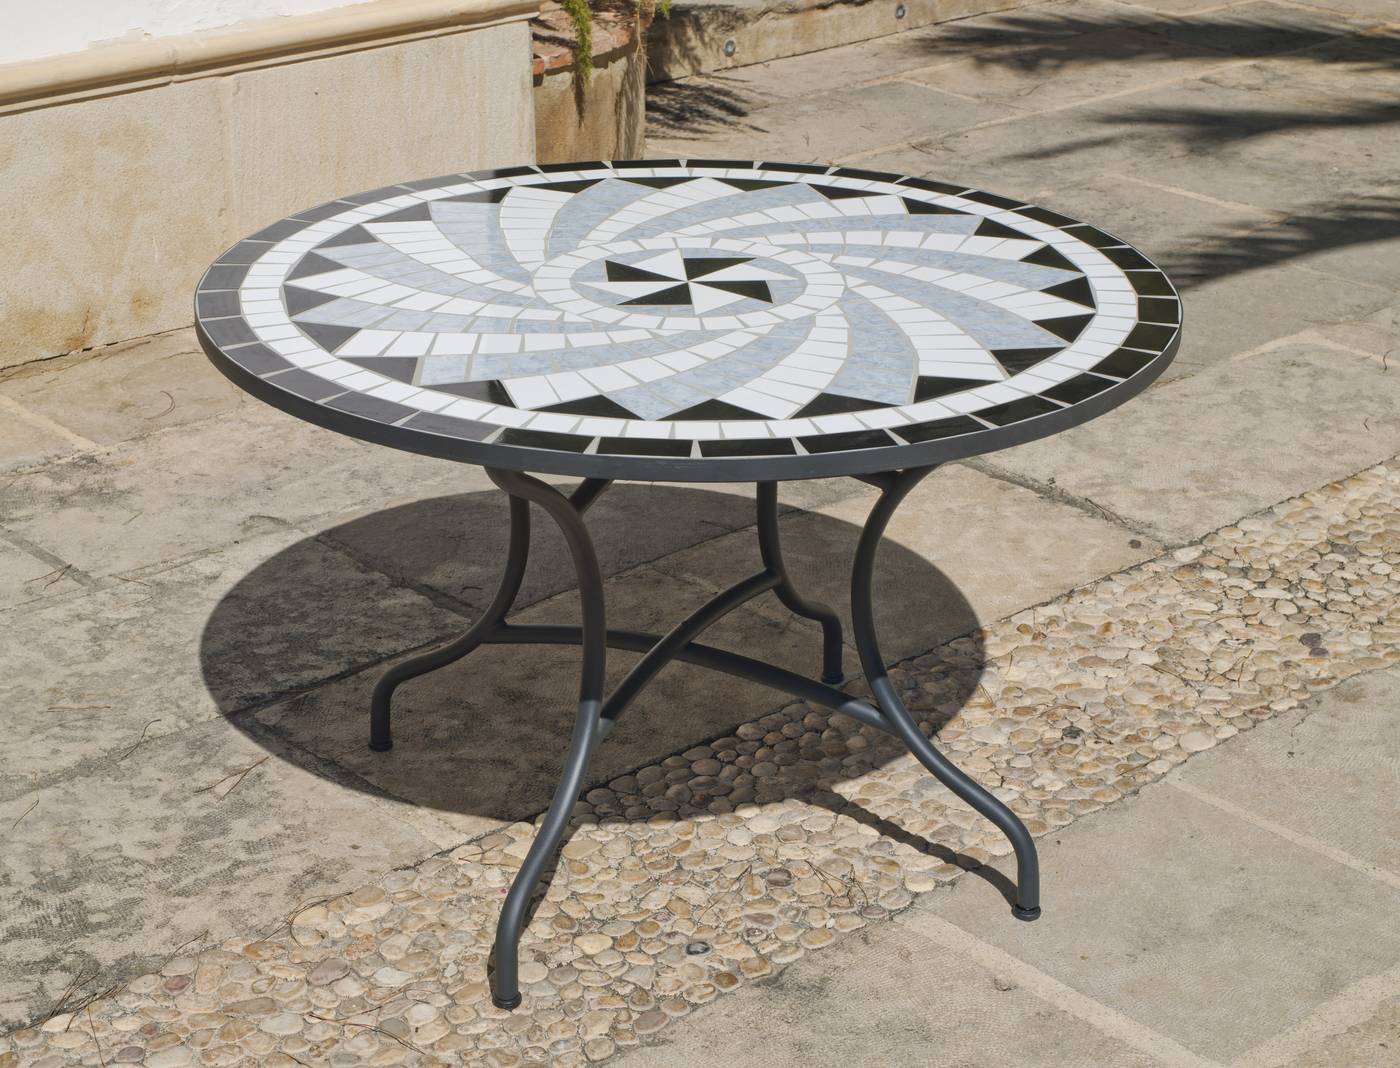 Set Mosaico Lara-Ampurias 120-4 - Conjunto para jardín color gris antracita: 1 mesa redonda 120 cm. de forja con panel mosaico + 4 sillones de ratán sintético